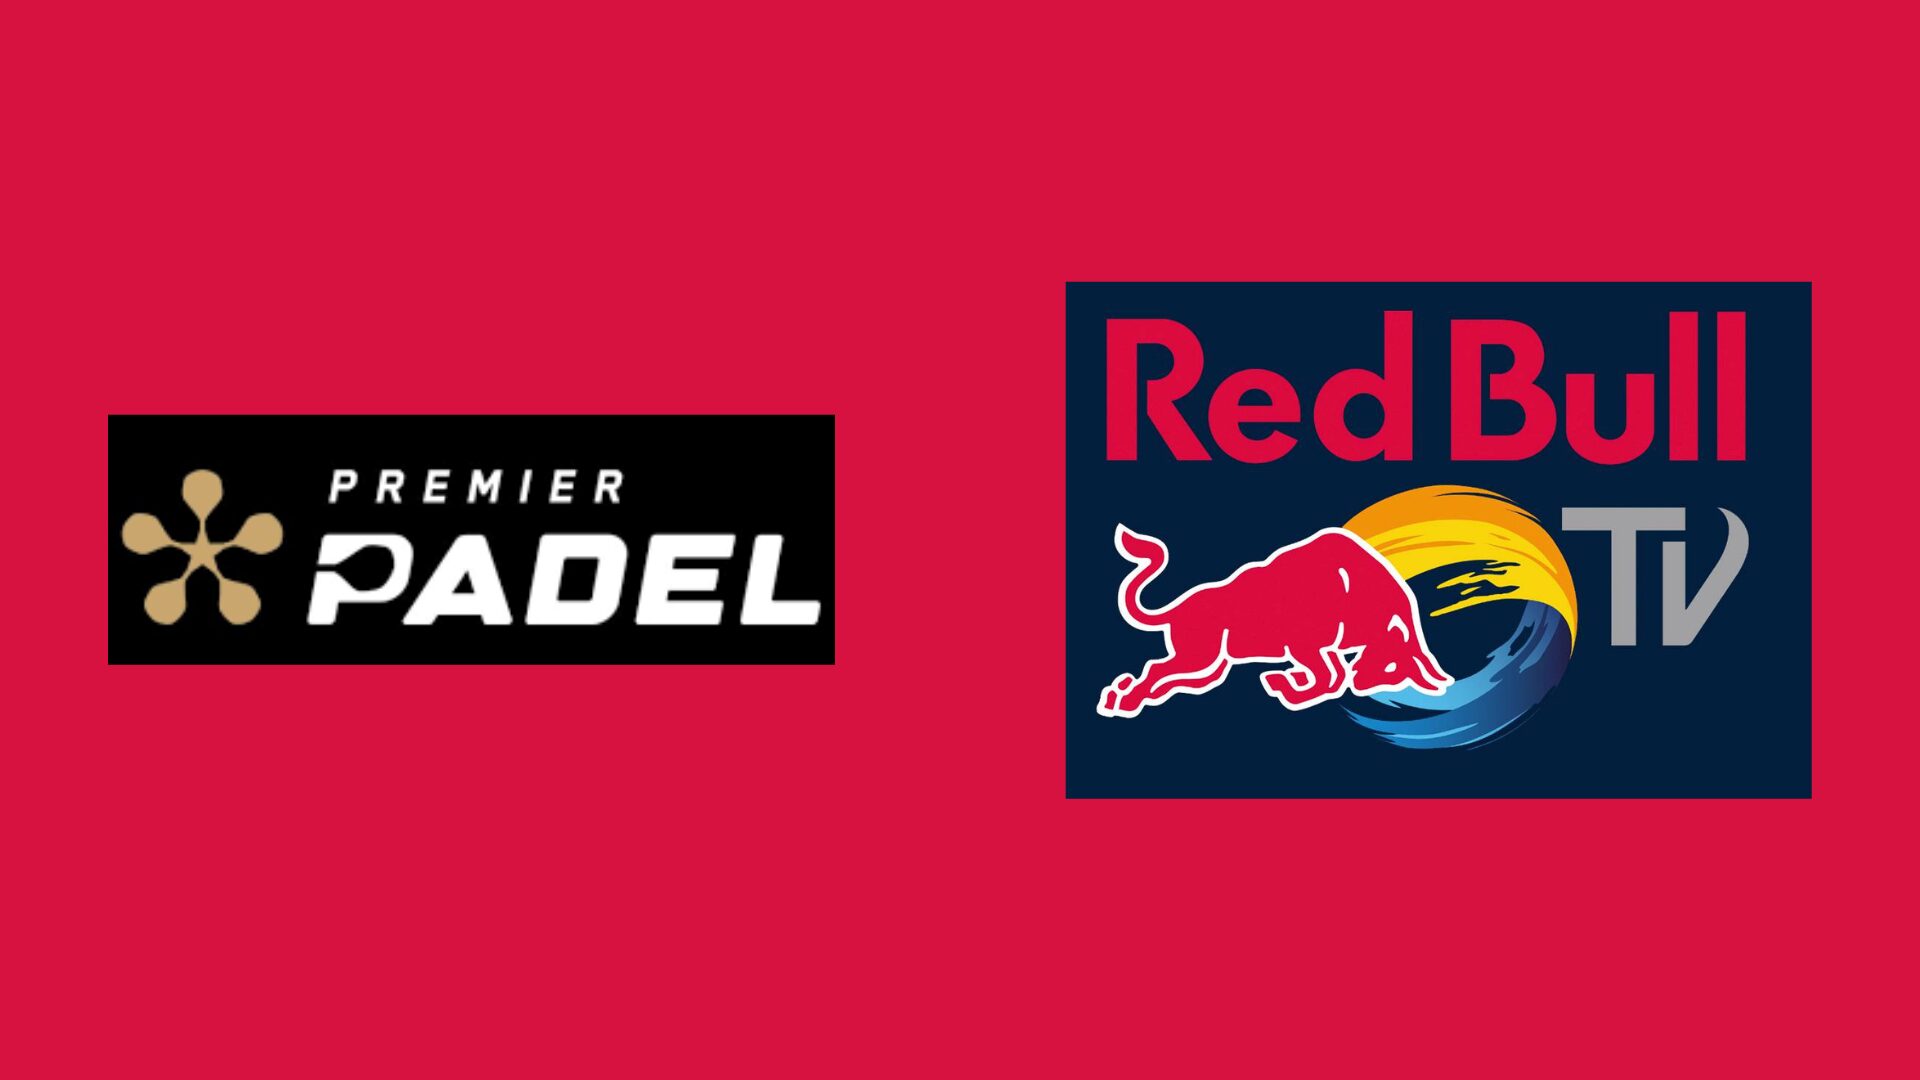 Partnerstwo pomiędzy Premier Padel oraz Red Bull TV za transmisję meczów!